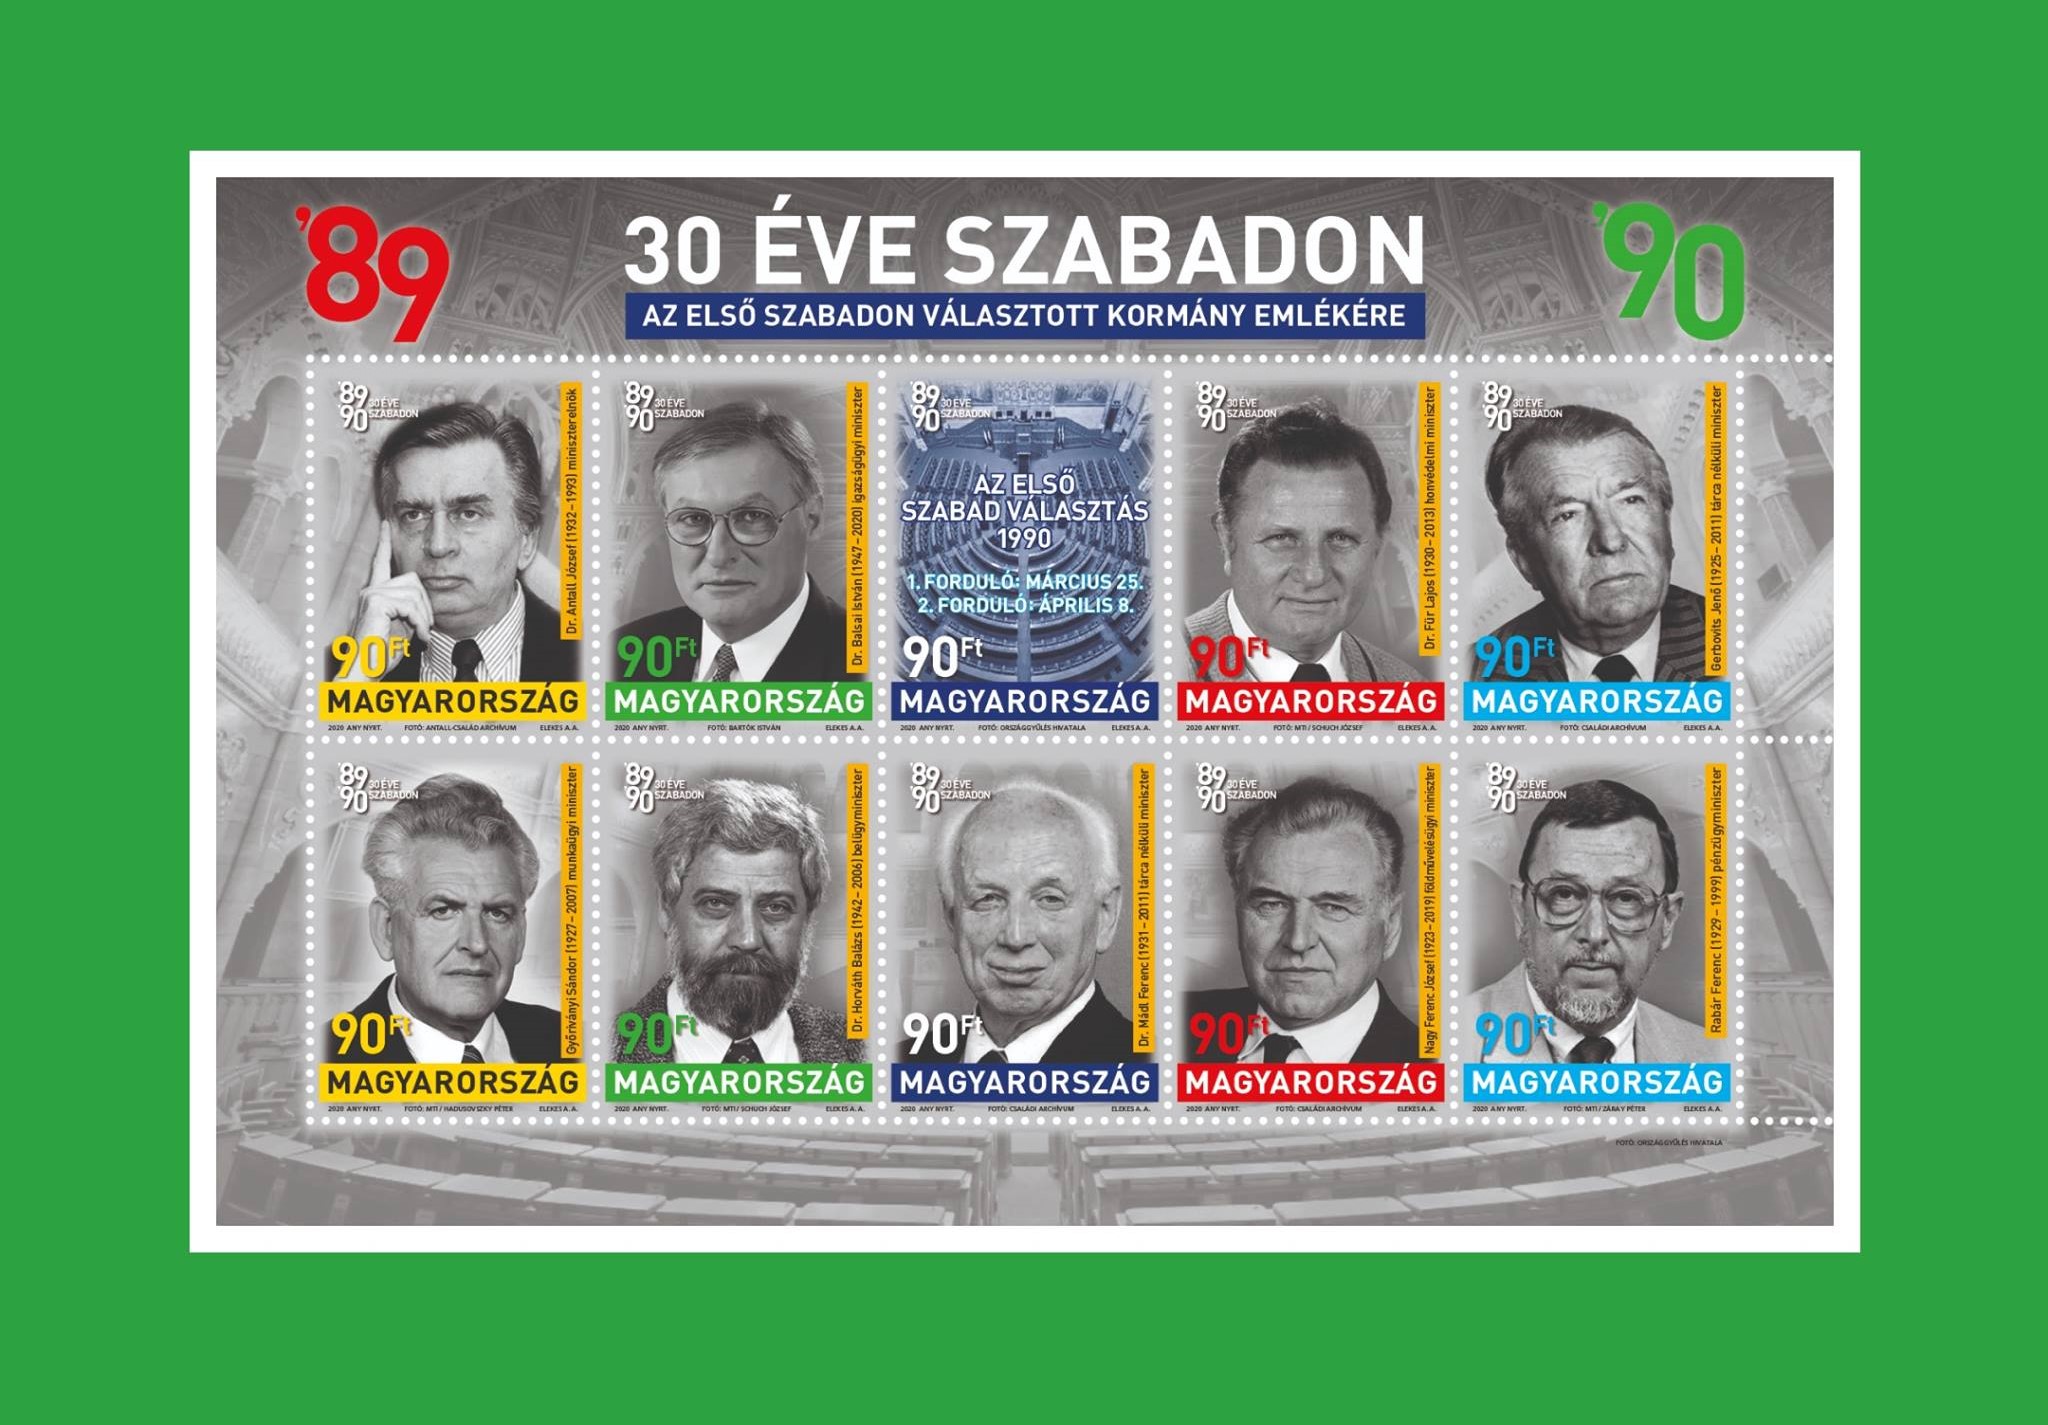 Briefmarken erinnern an die erste frei gewählte ungarische Regierung